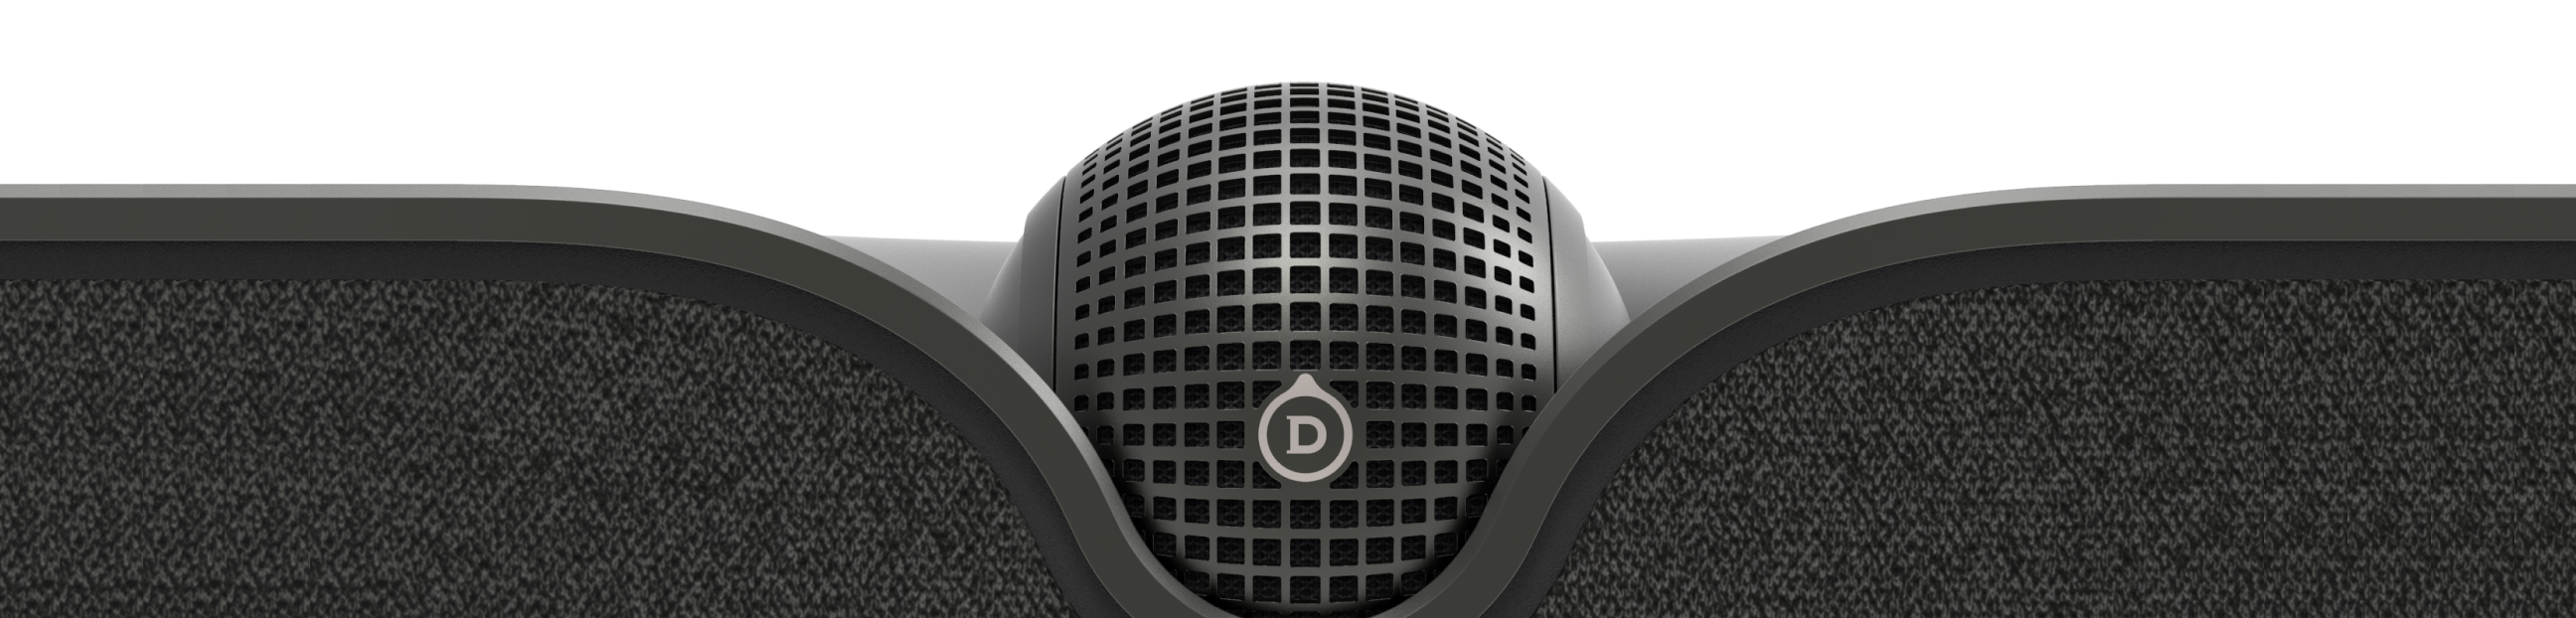 Devialet Dione - High-End Dolby Atmos 5.1.2 Soundbar